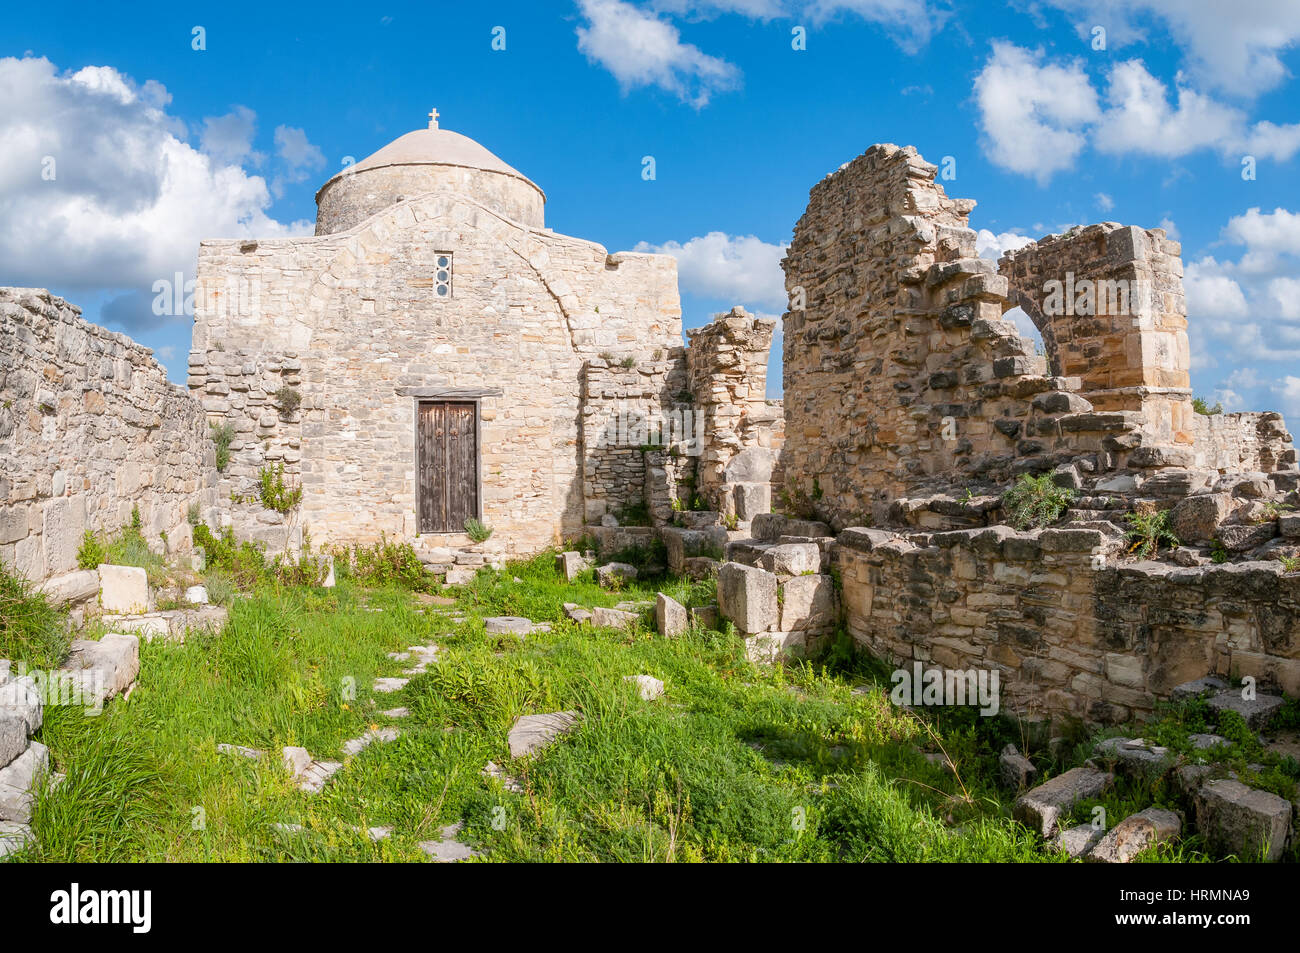 Timiou Stavrou monastero si trova nel tardo romana, primi insediamenti Bizantini, che è menzionata nel Apostoles agisce come la terra di Anogyron. Foto Stock